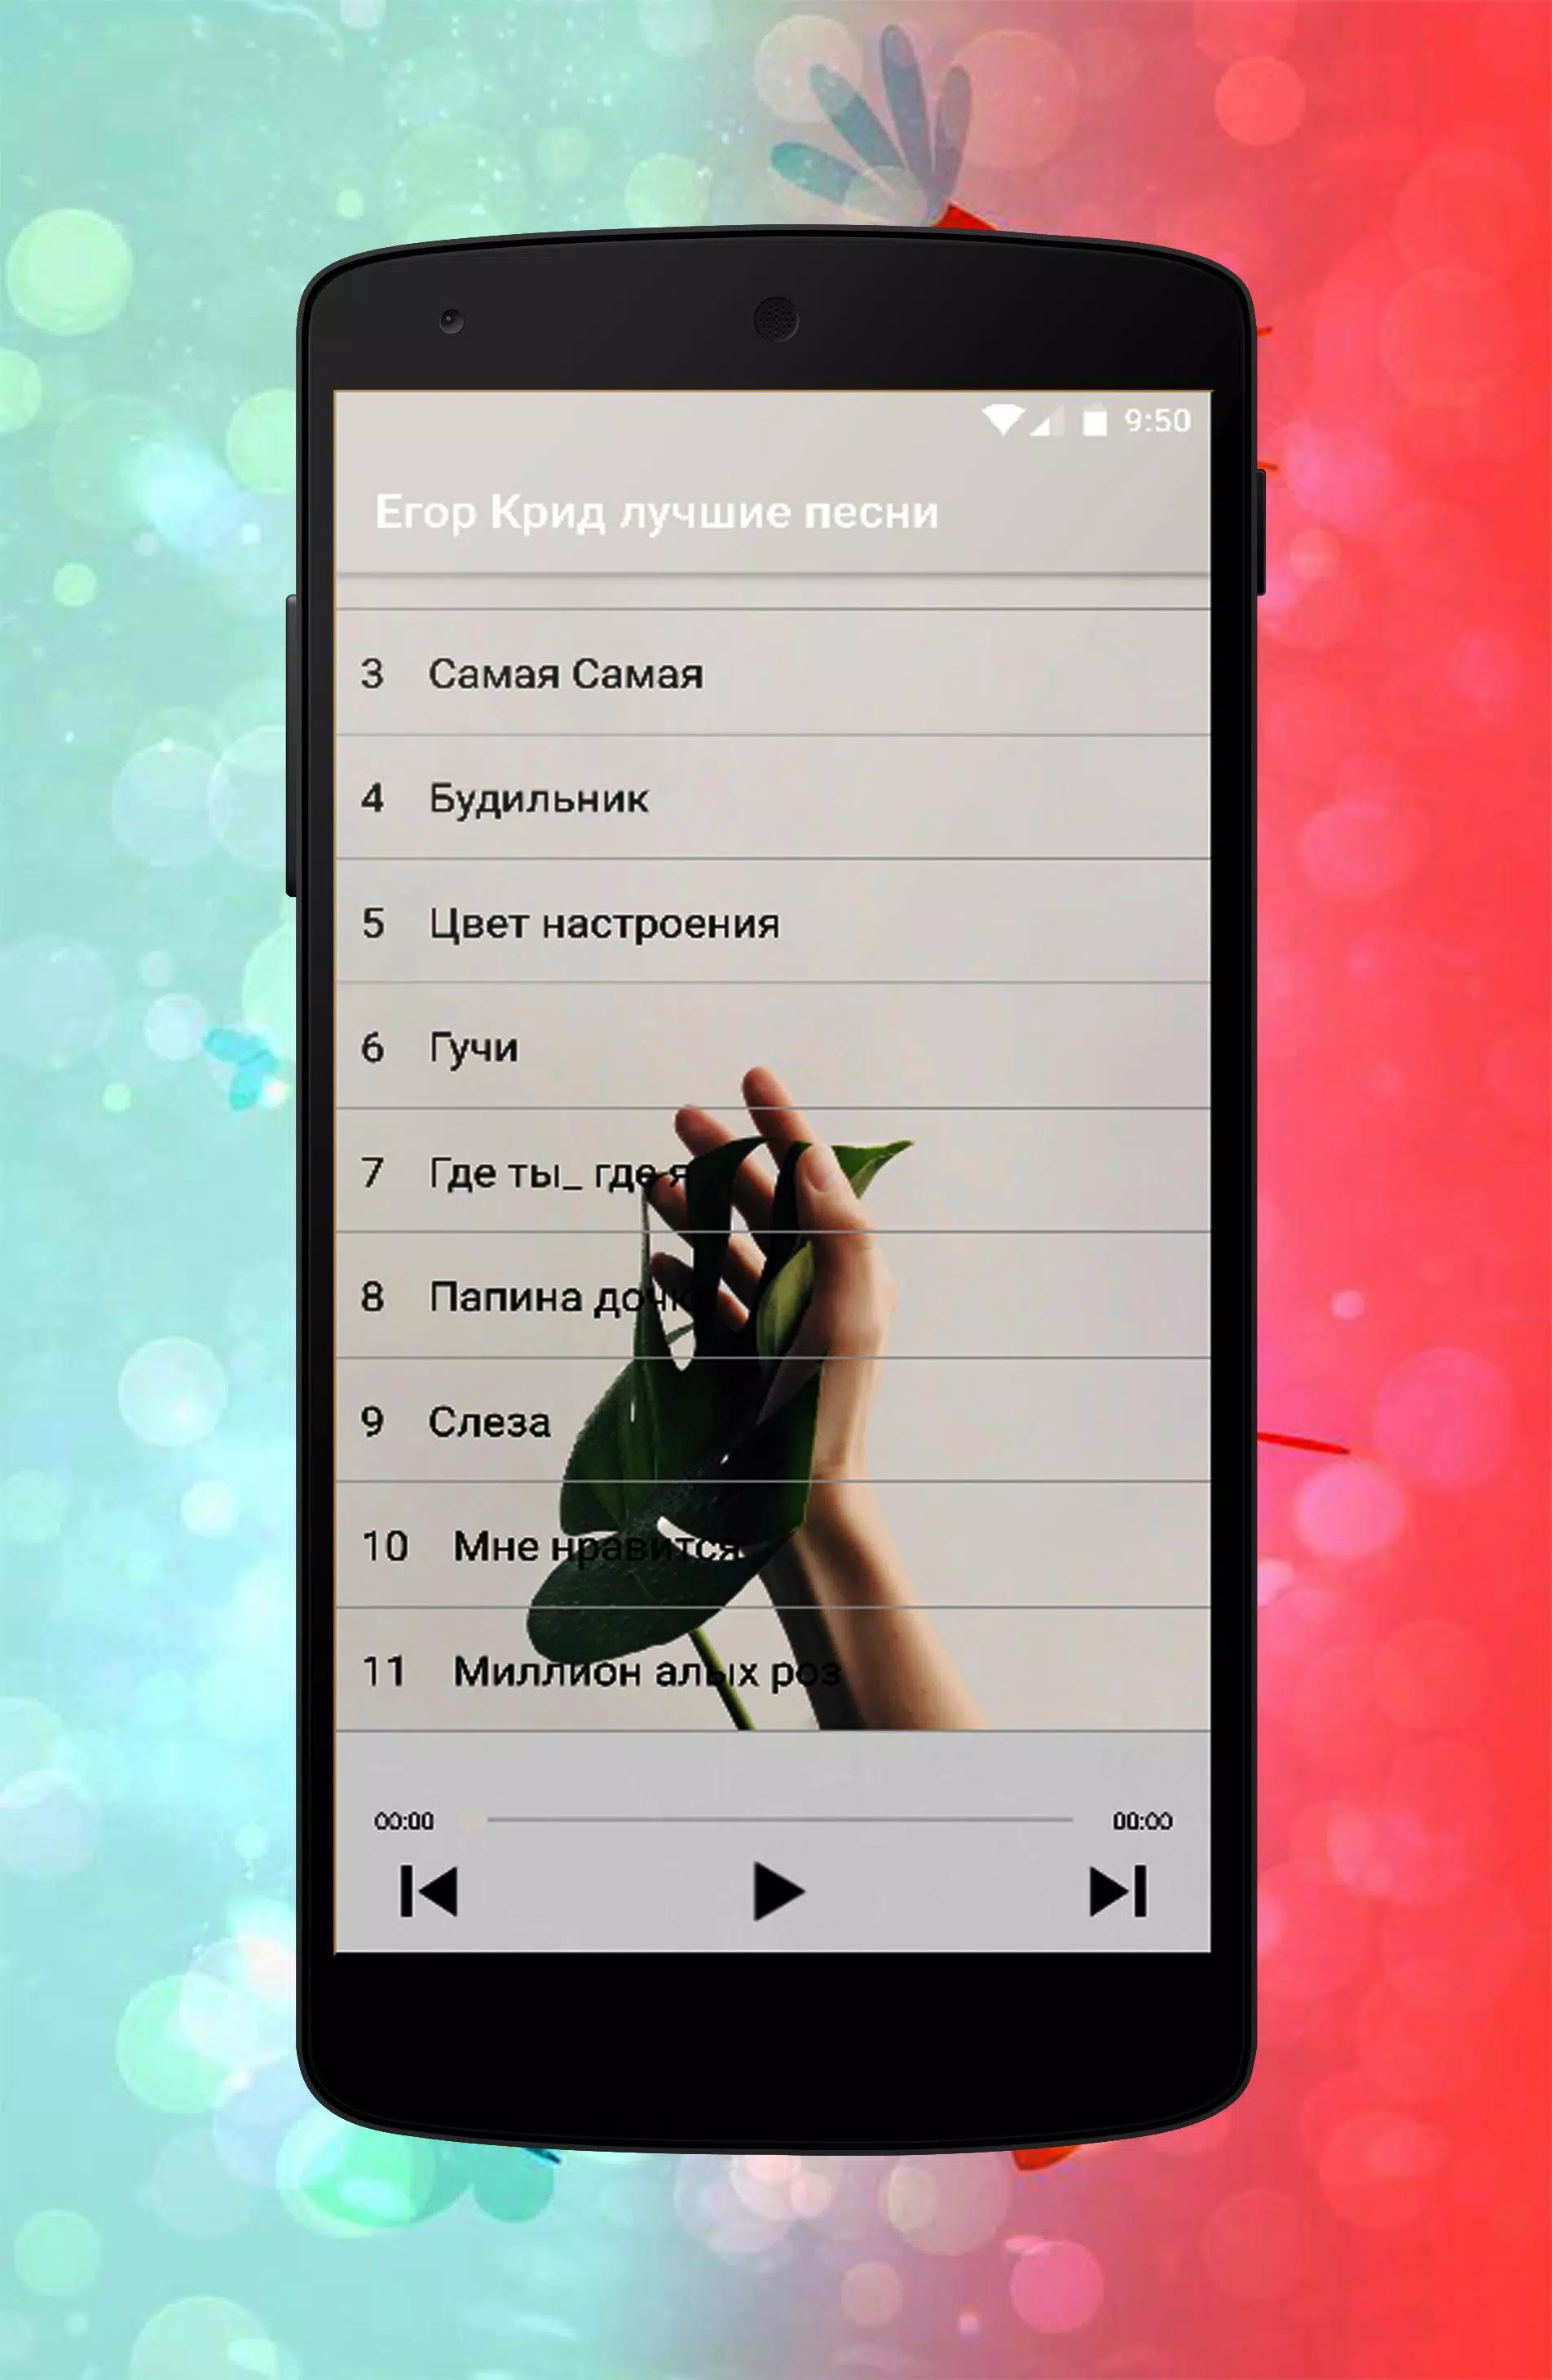 Егор Крид лучшие песни APK for Android Download